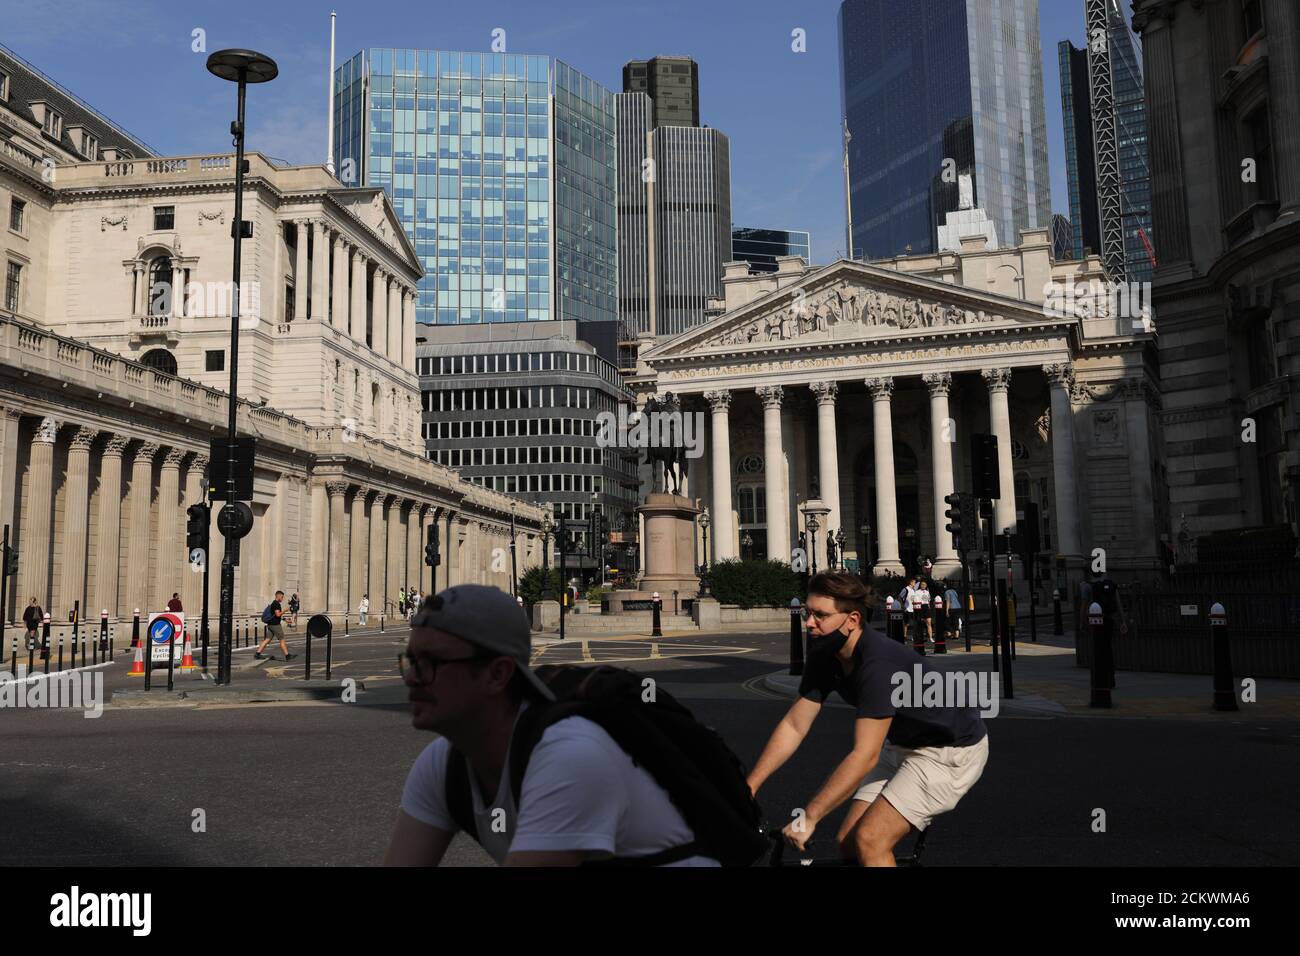 Londra, Gran Bretagna. 16 Set 2020. Il 16 settembre 2020, la gente passa davanti alla Bank of England a Londra, Gran Bretagna. Il tasso di disoccupazione del Regno Unito è salito al 4.1 per cento nei tre mesi a luglio, con i giovani più colpiti, l'Ufficio nazionale per le statistiche (ONS) ha detto Martedì. Credit: Tim Ireland/Xinhua/Alamy Live News Foto Stock